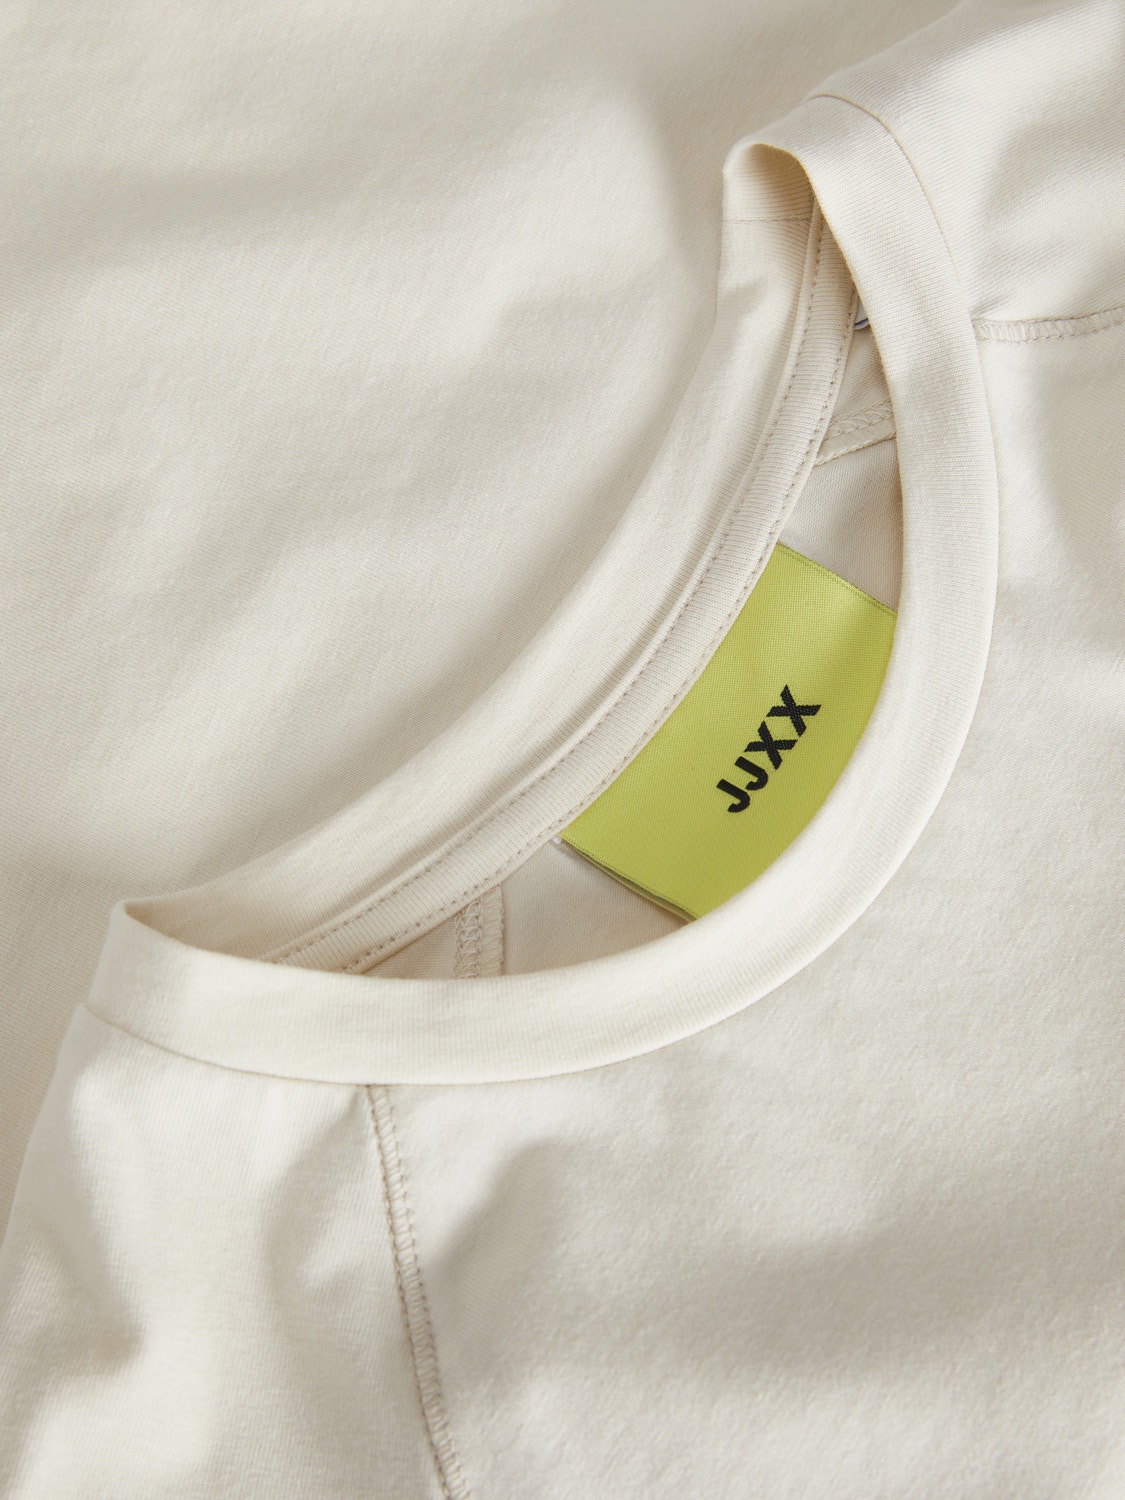 JJXX JXGIGI Camiseta -Bone White - 12241202